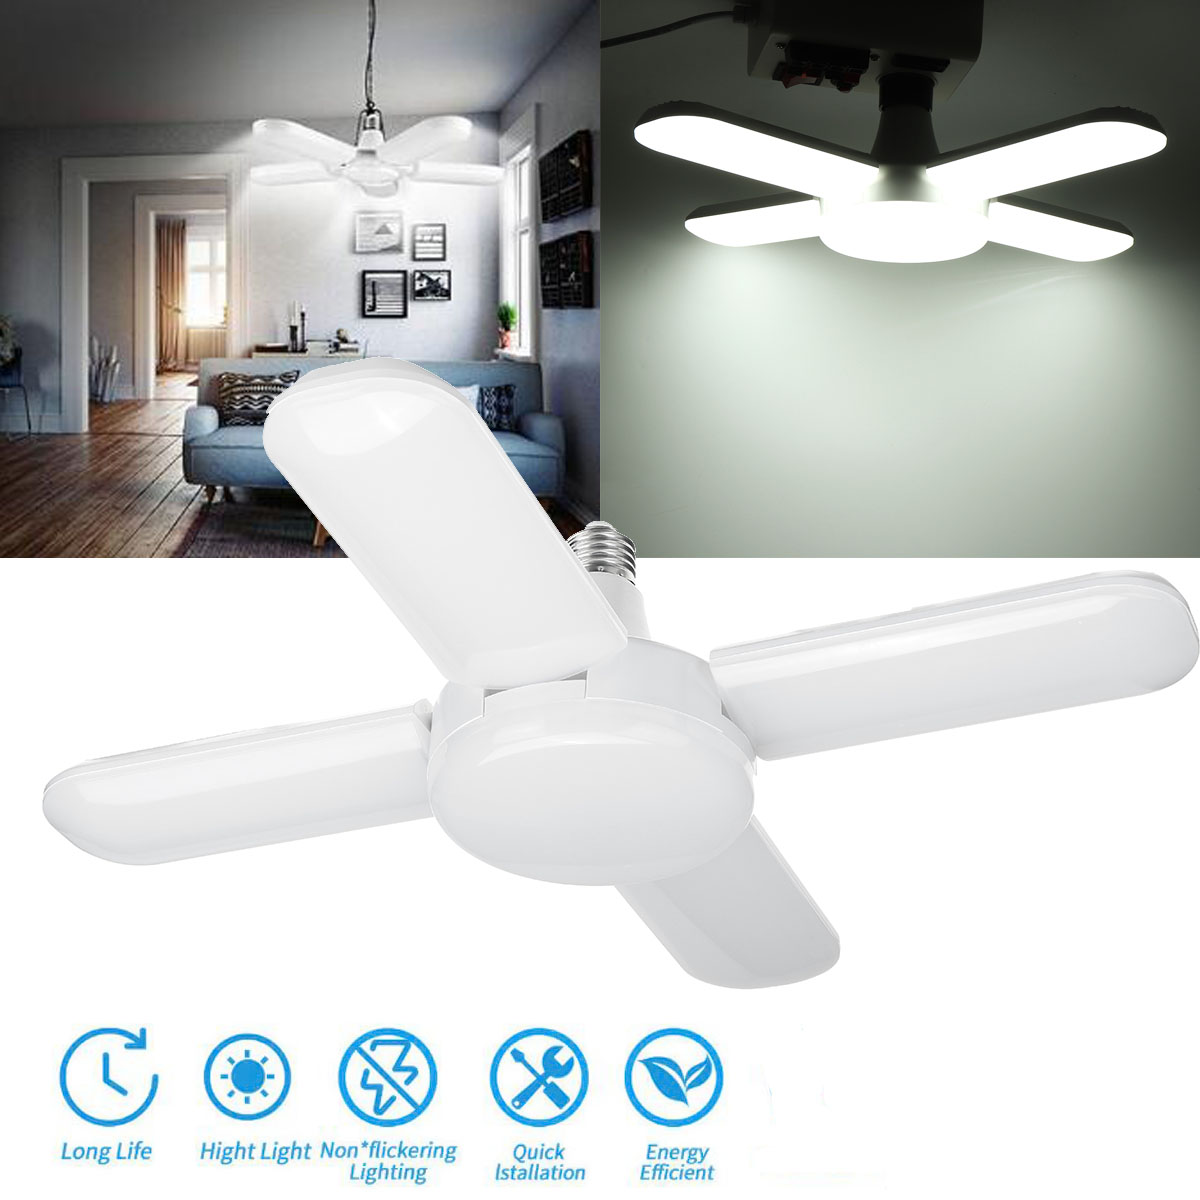 80W-85-265V-E27-LED-Garage-Shop-Work-Light-Ceiling-Deformable-Adjustable-Lamp-1732610